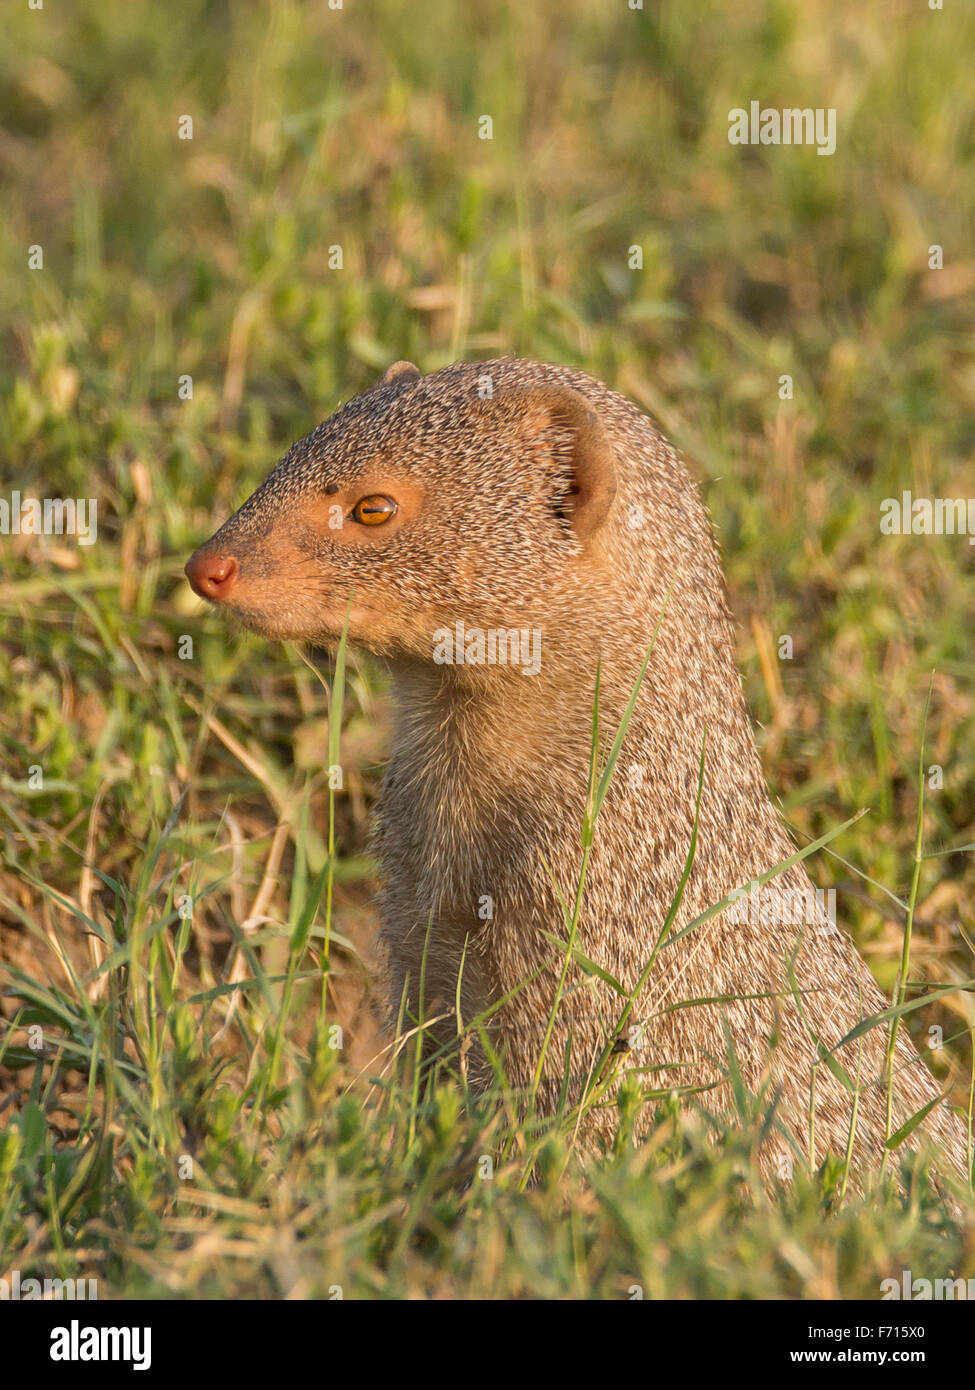 Indian grey mongoose (Urva edwardsii) Stock Photo